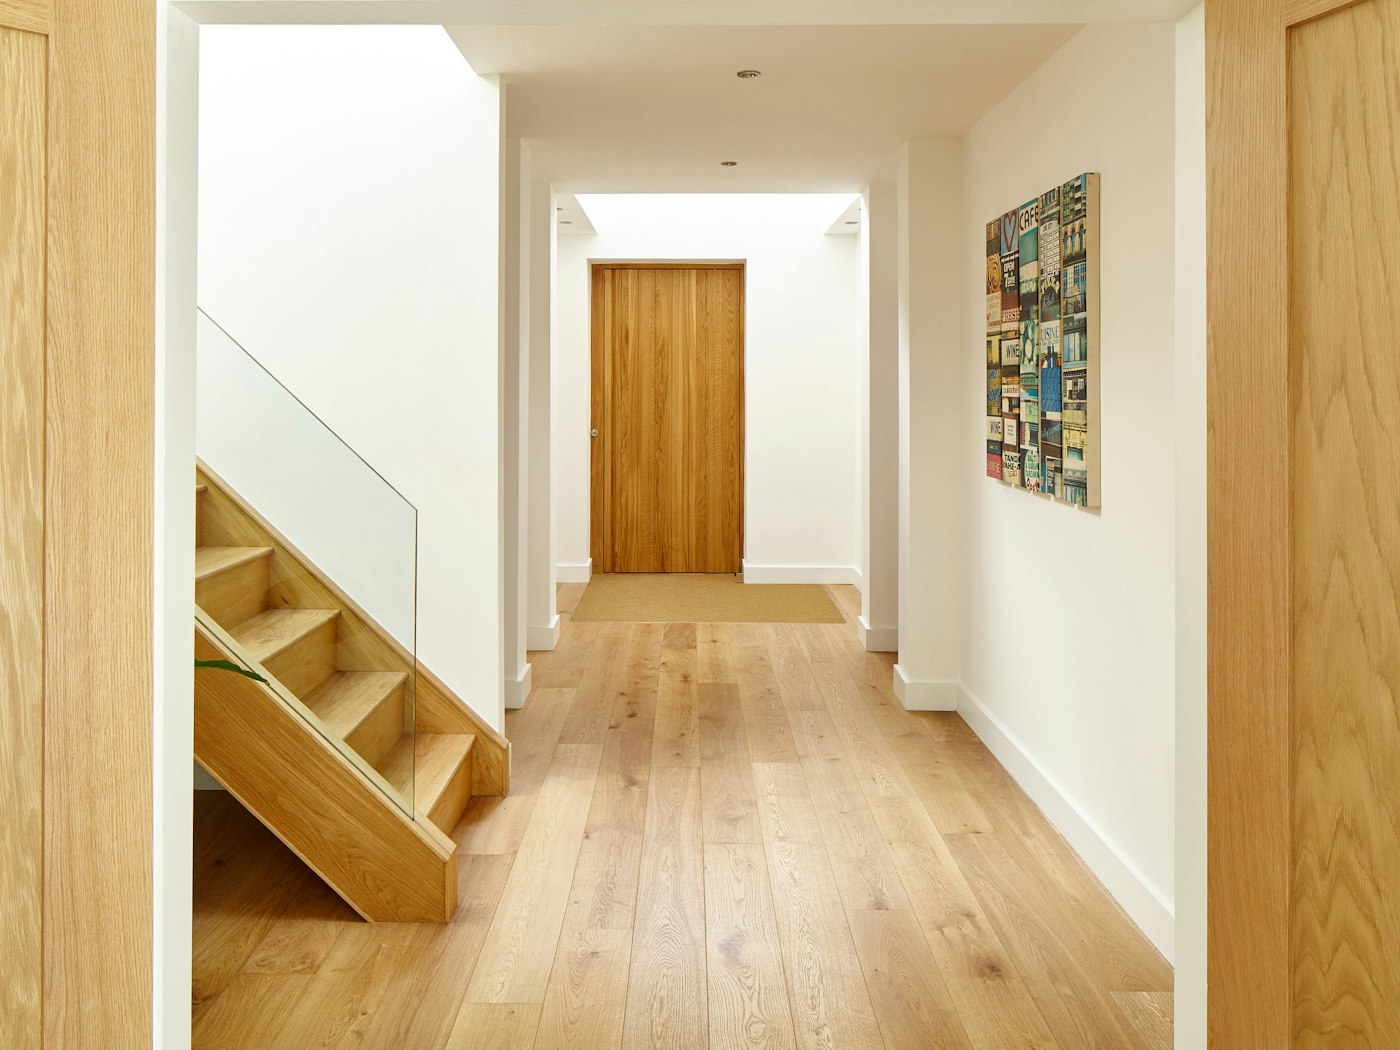 Inside, the european oak theme flows throughout this minimalist house